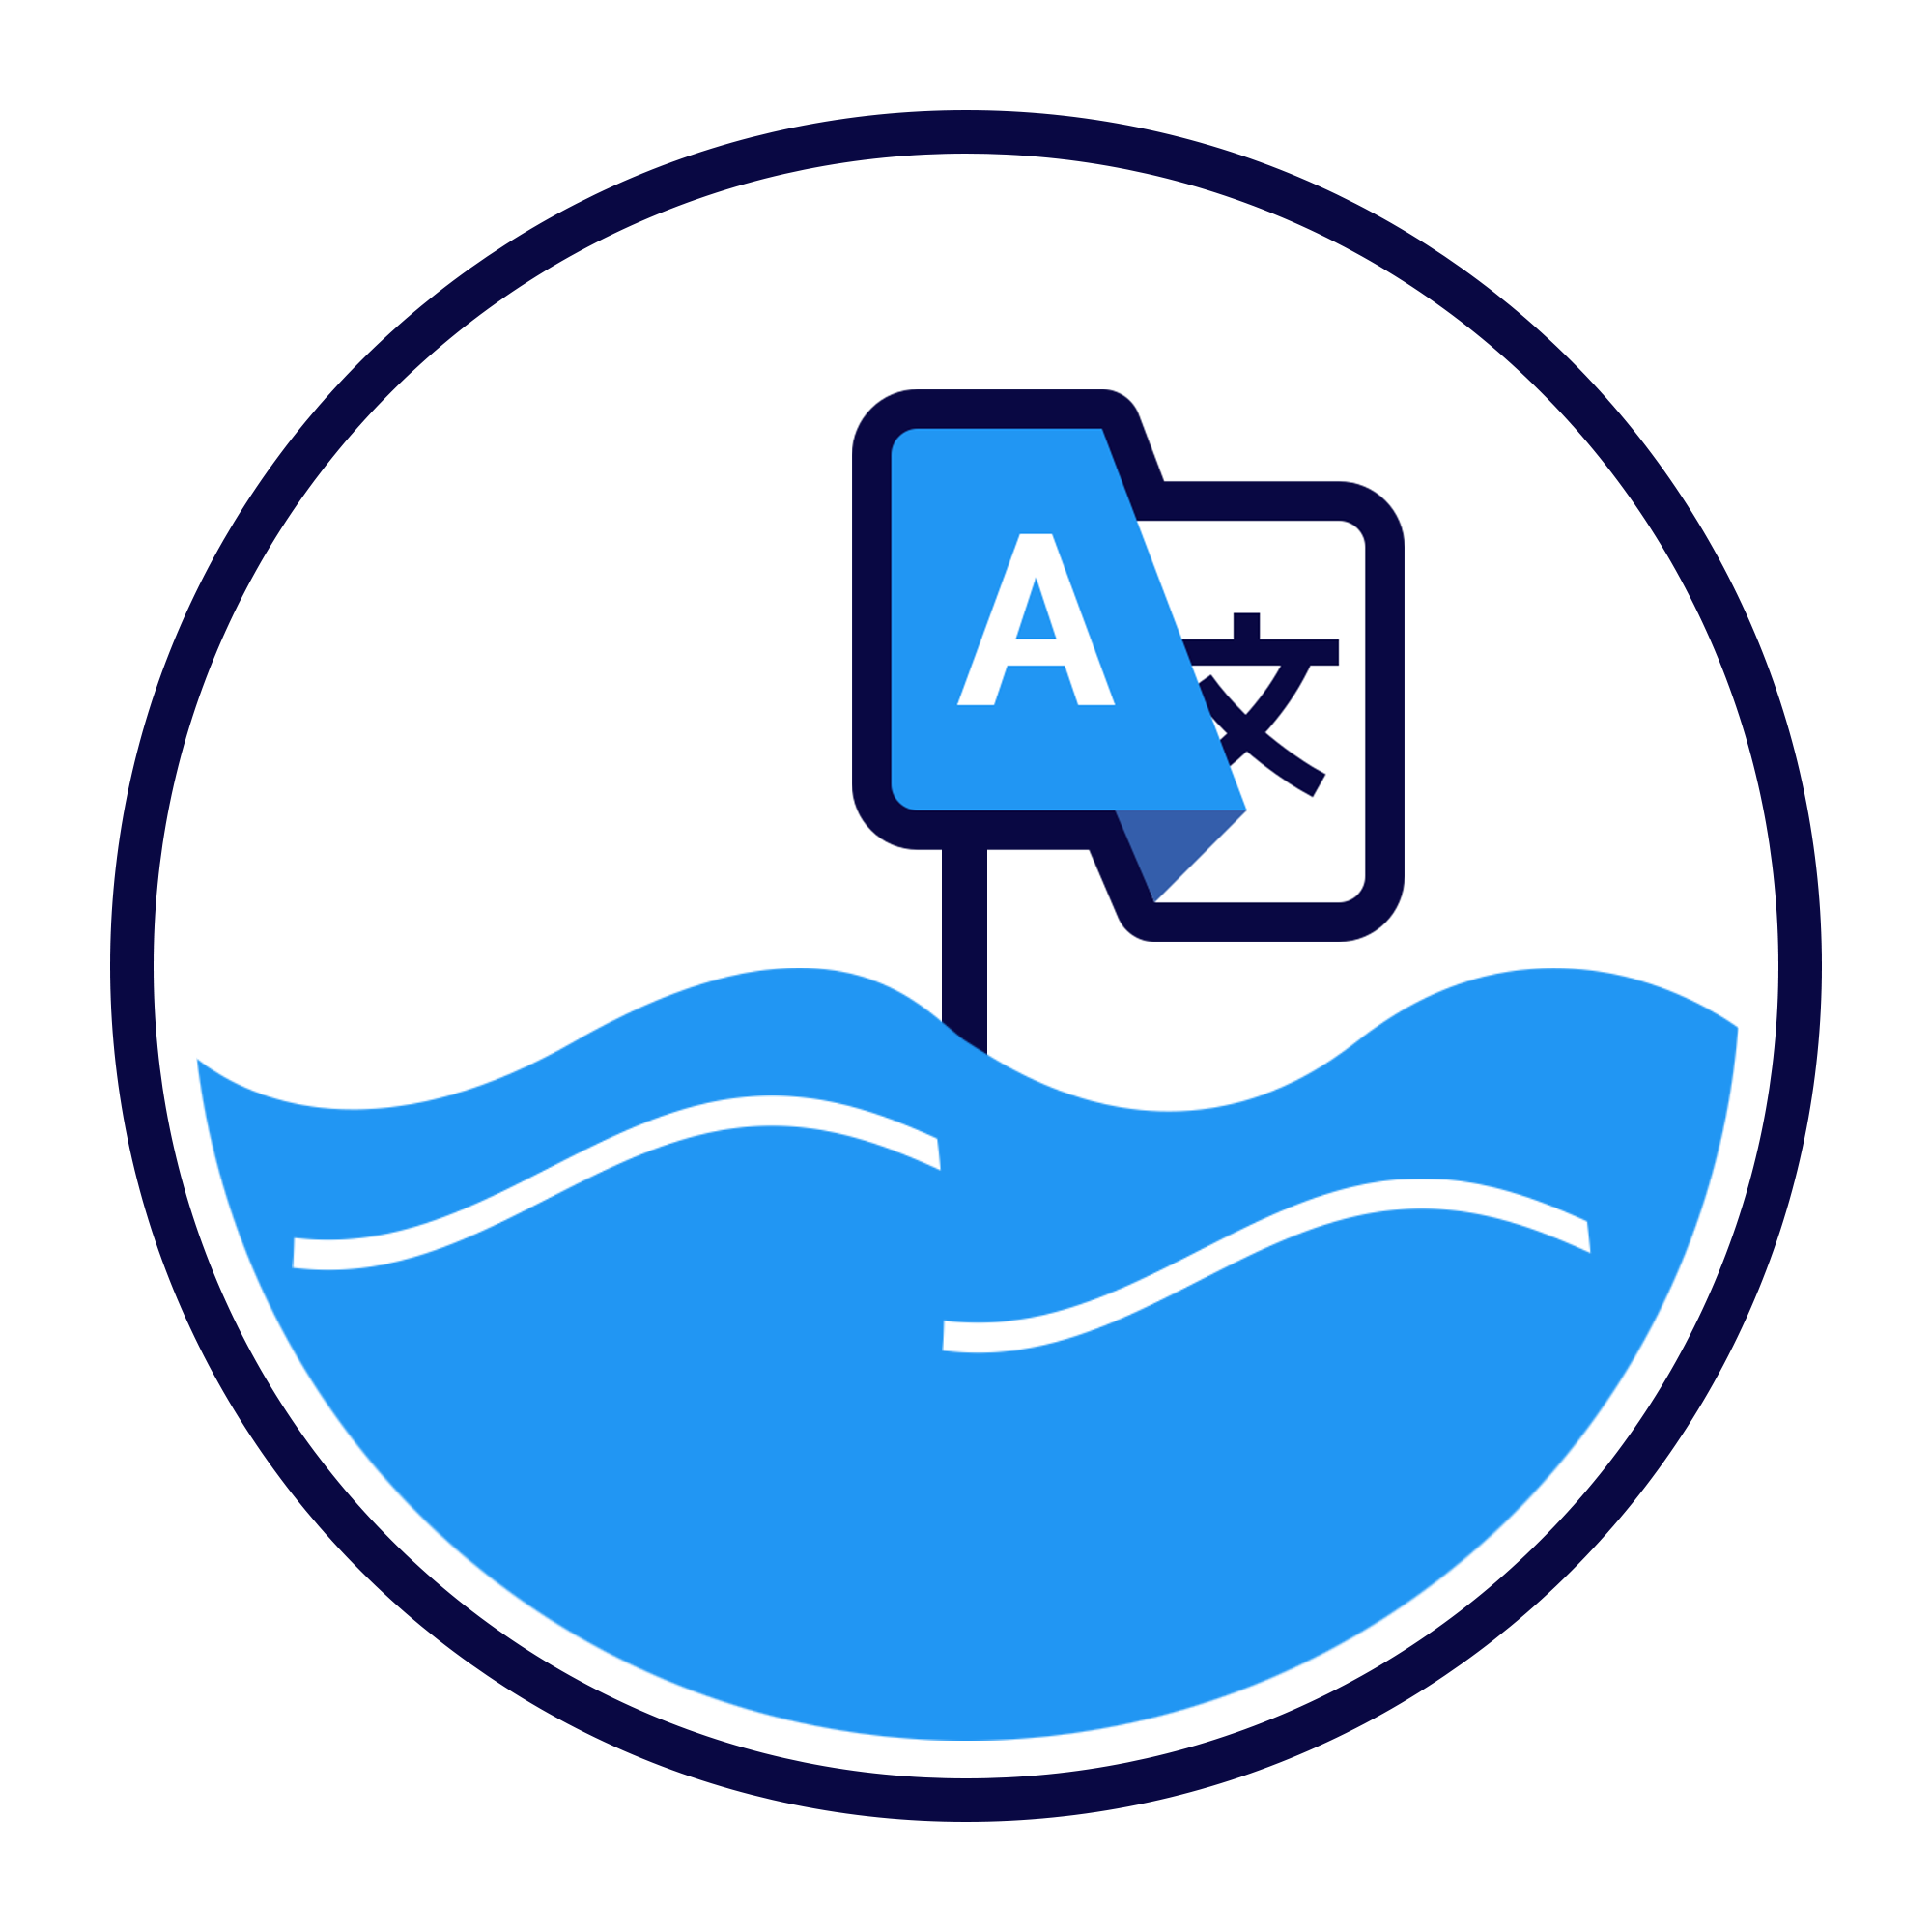 Ocean-languages Logo